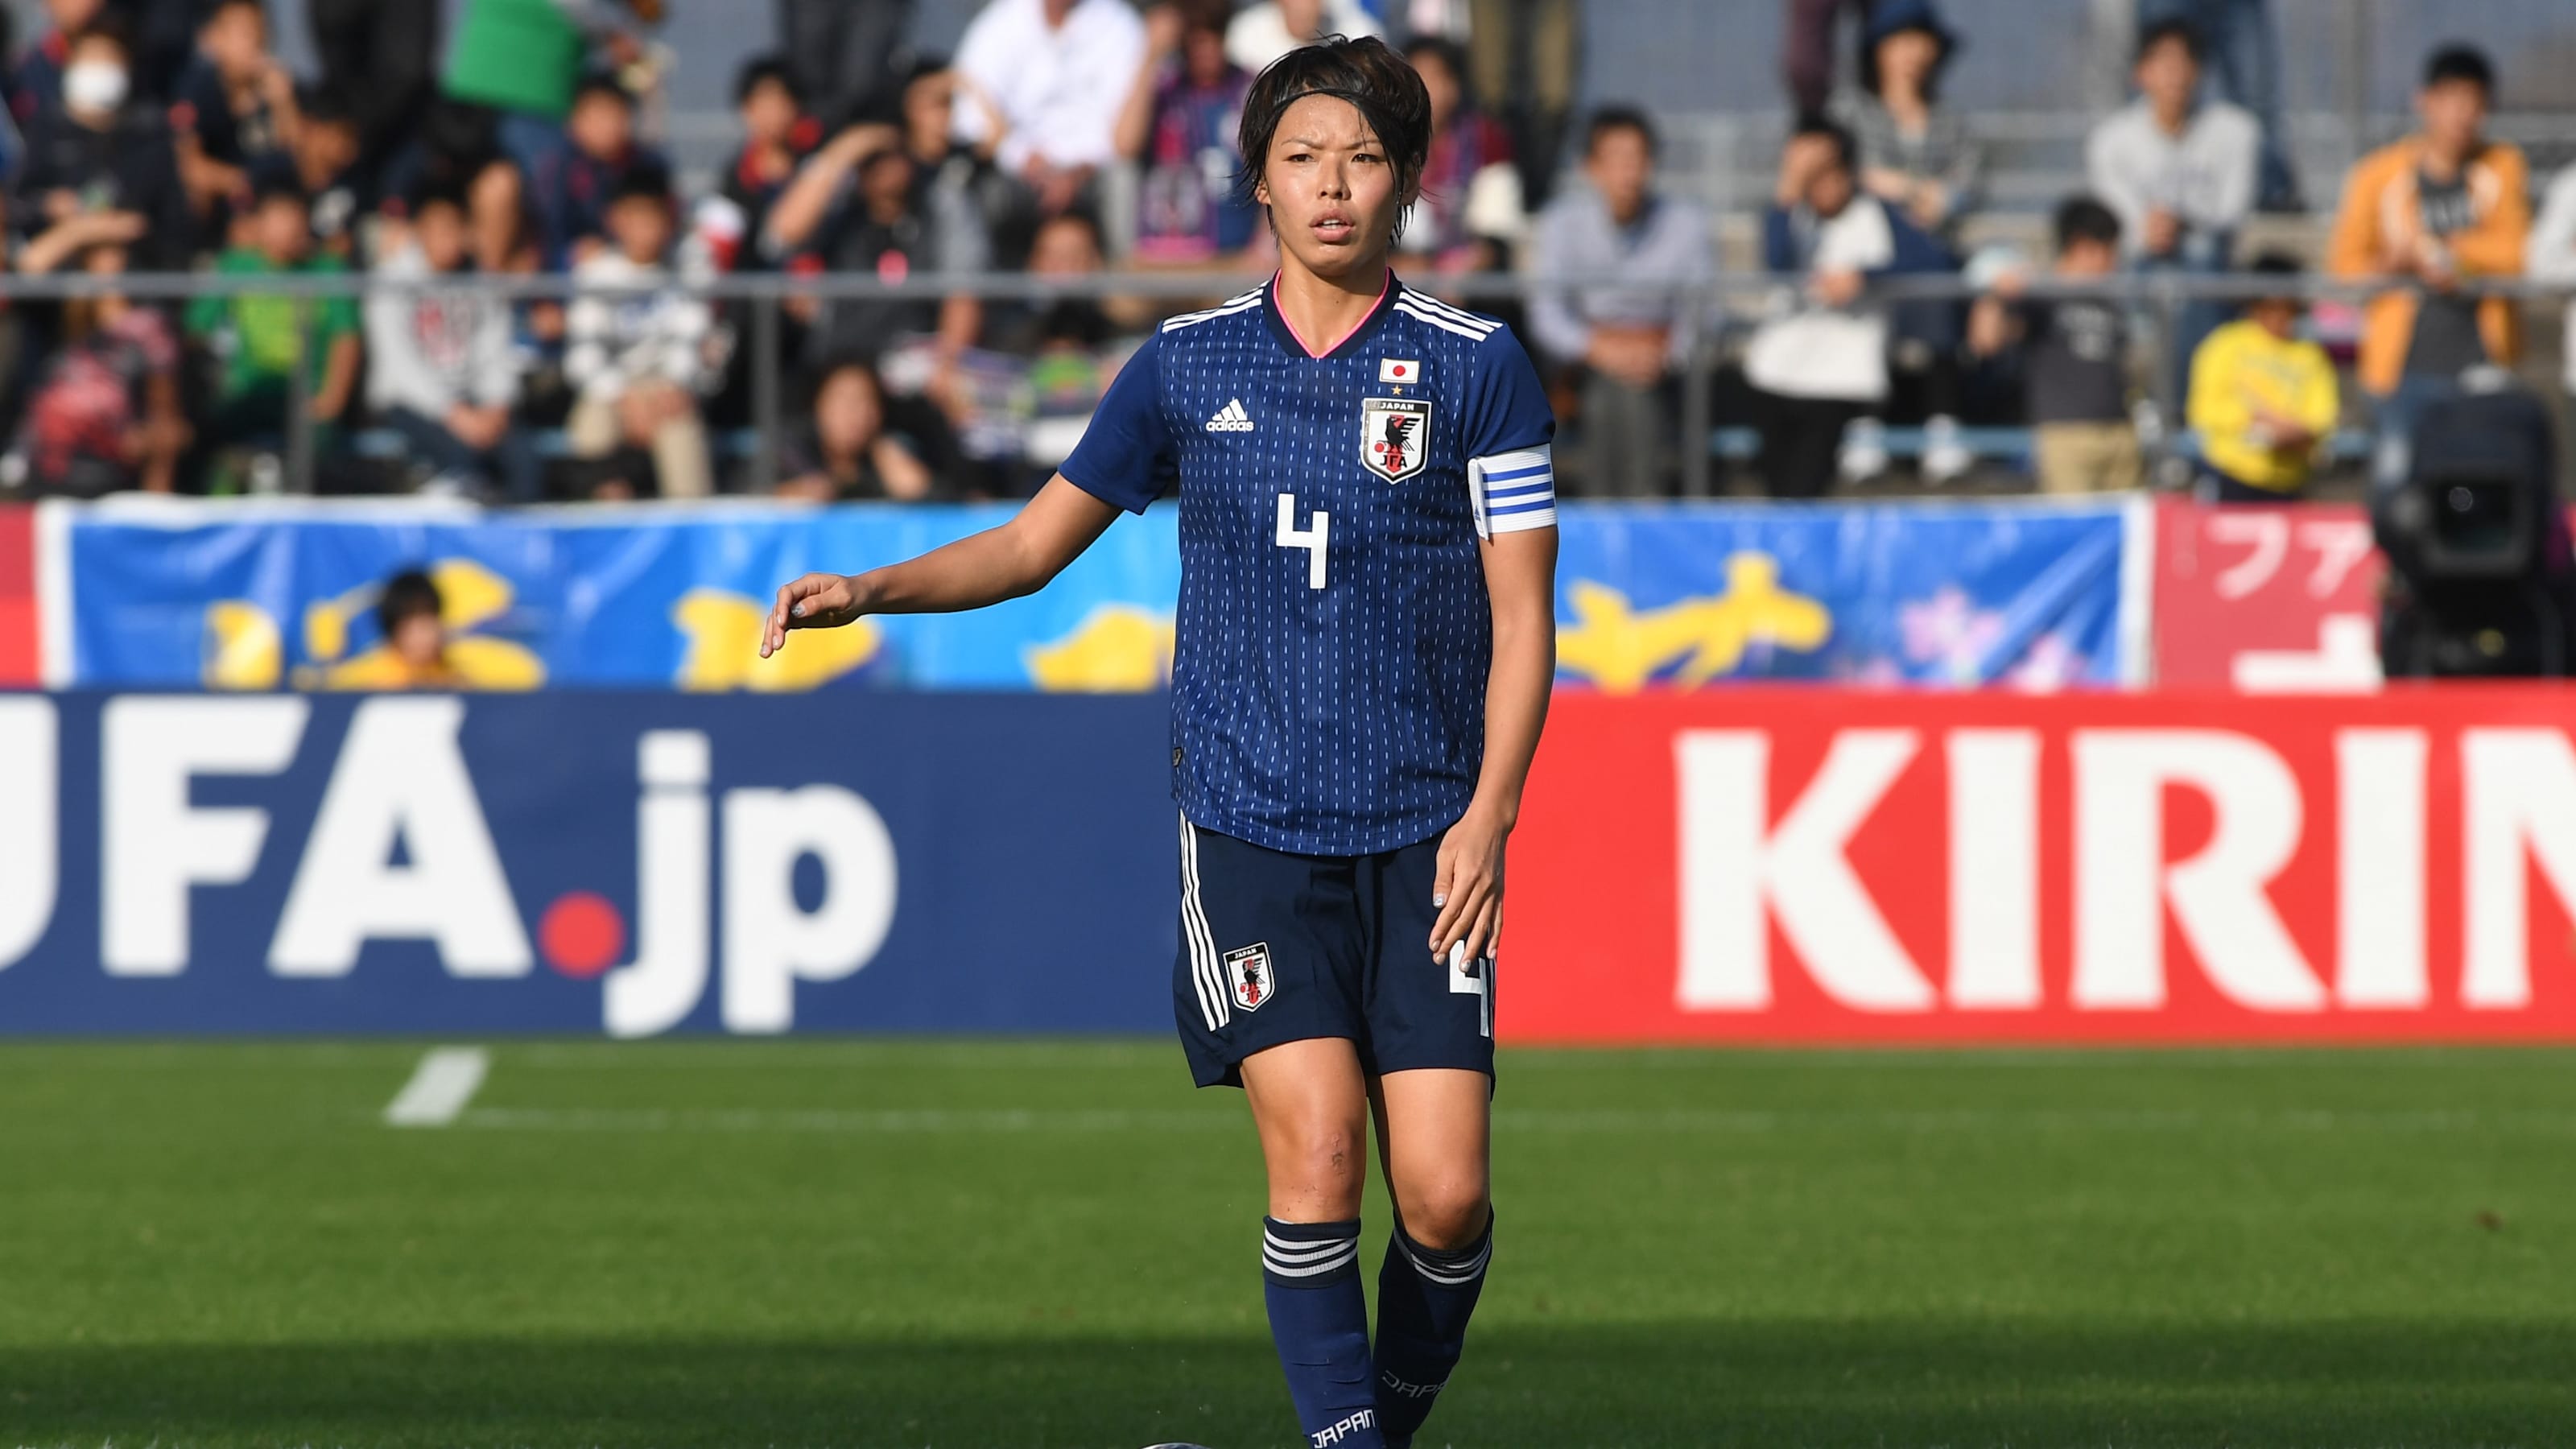 女子サッカー シービリーブス杯開幕 6月開幕の女子w杯に向け日本はどこまで戦えるか